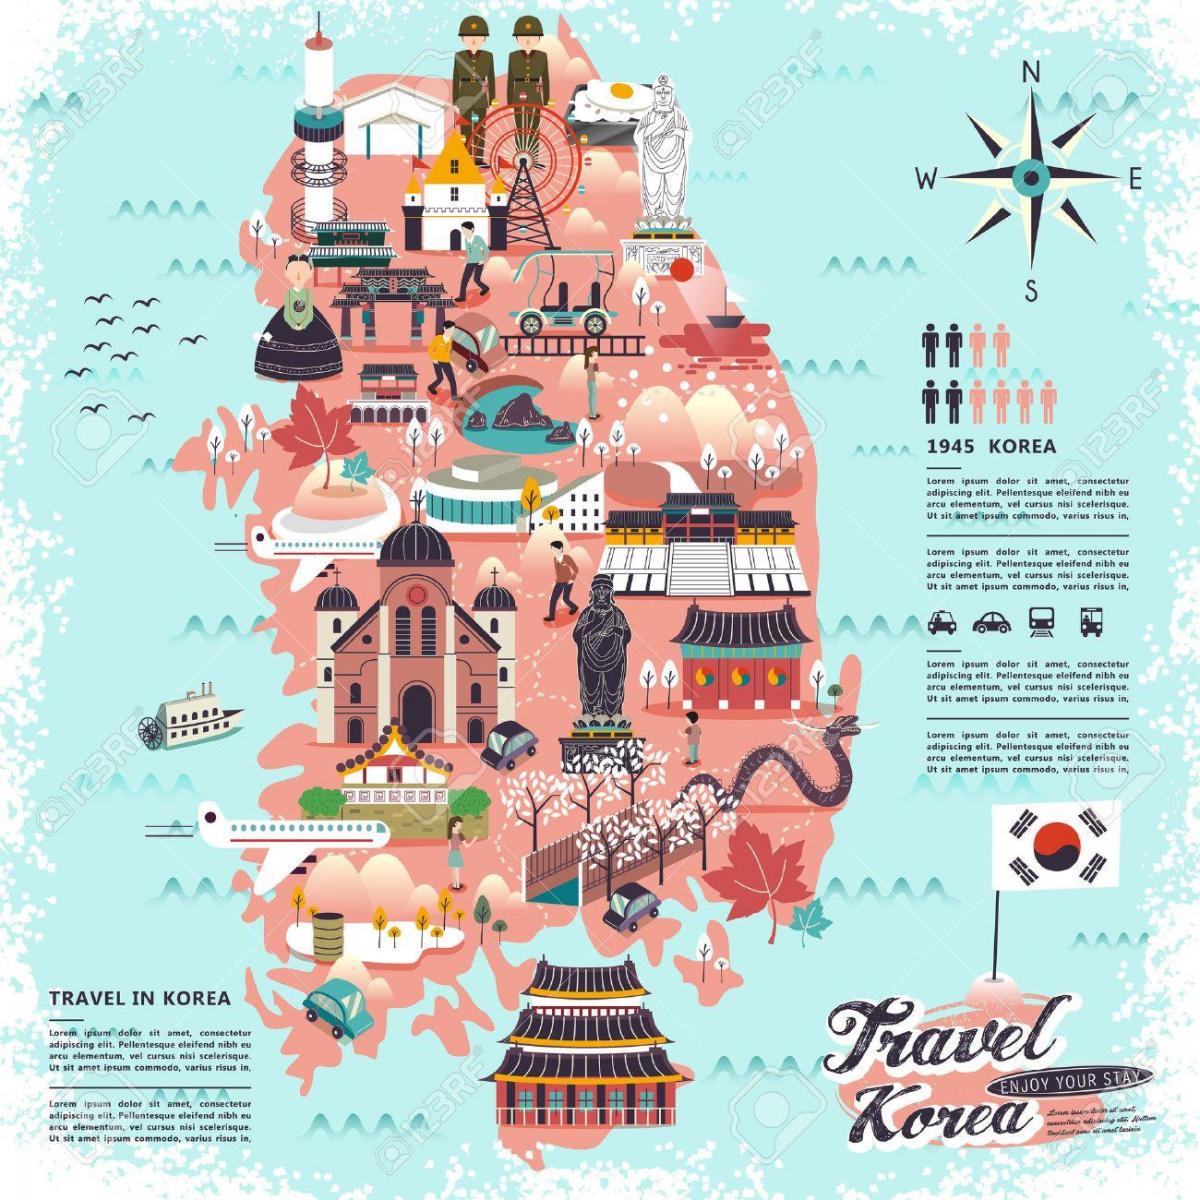 كوريا الجنوبية (جمهورية كوريا) خريطة السفر